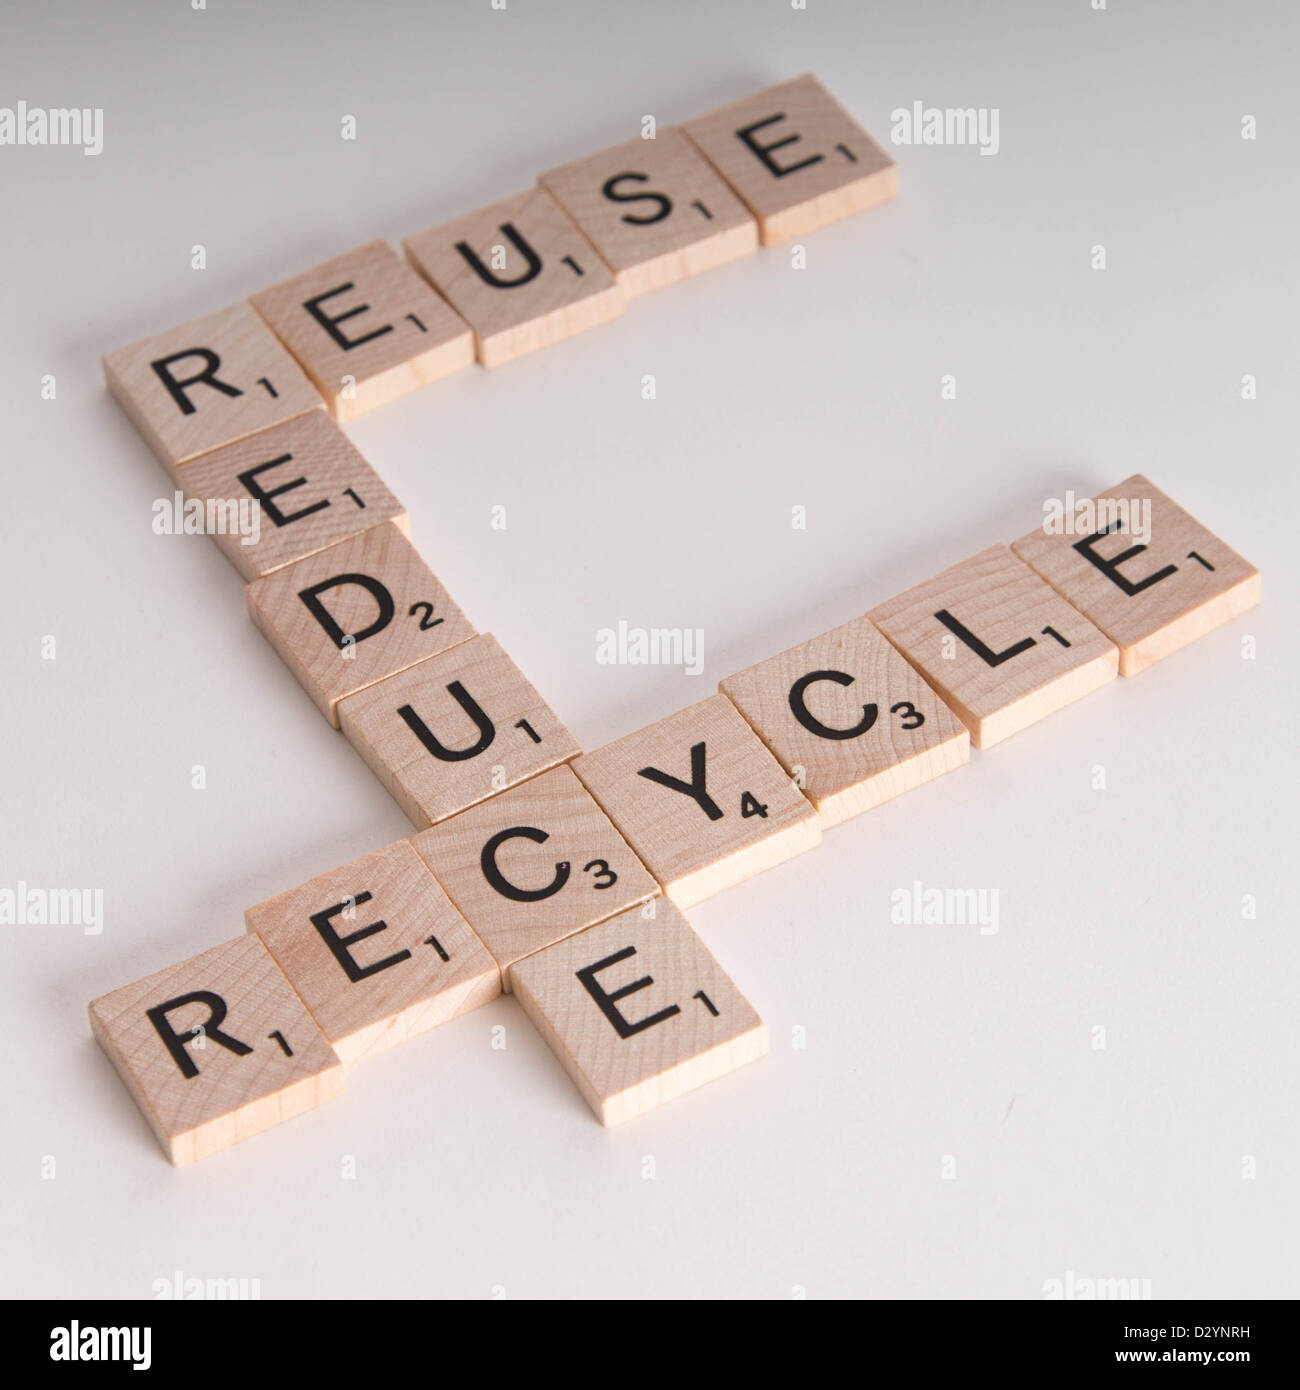 Reduce, Reuse, Recycle Konzept. Holzbuchstaben Scrabble buchstabieren "reduce, reuse, recycle" isoliert auf weißem Hintergrund Stockfoto